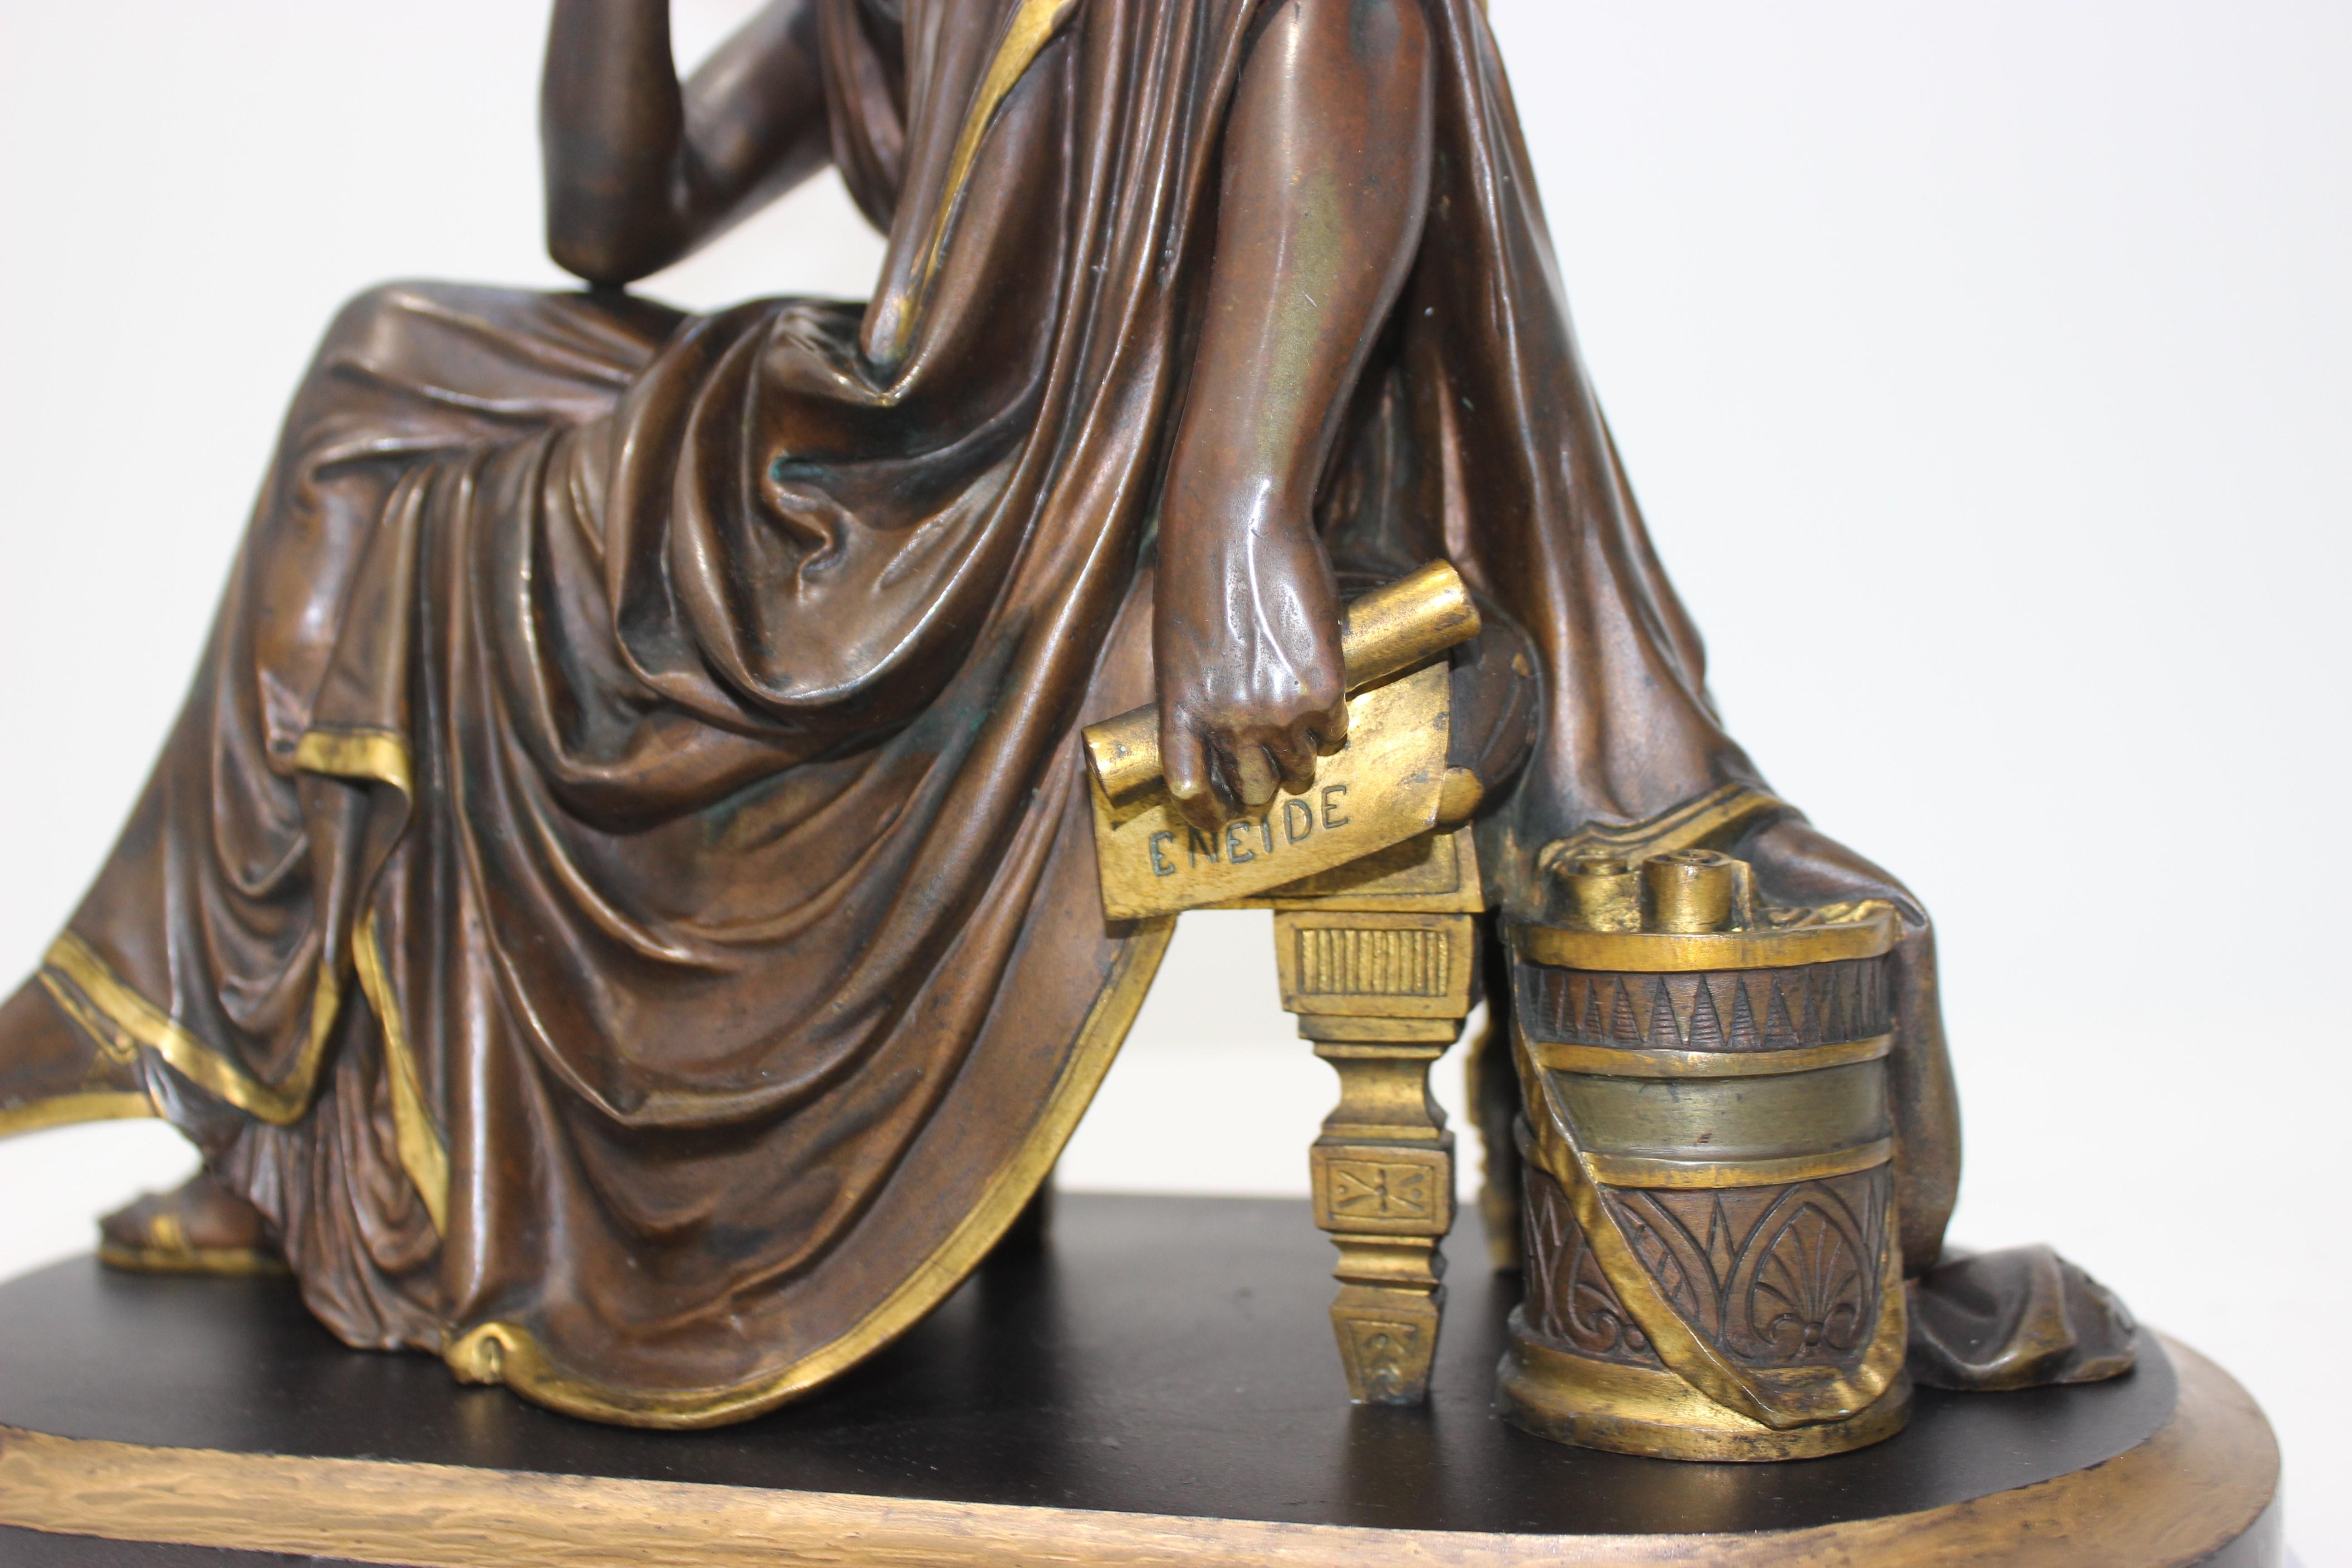 Ce bronze Grand Tour du XIXe siècle représente le poète romain Virgile en contemplation et est d'après le sculpteur Albert-Ernest Carrier-Belleuse.

Remarque : la sculpture est séparée du socle.

Note : La base est en marbre avec une bande